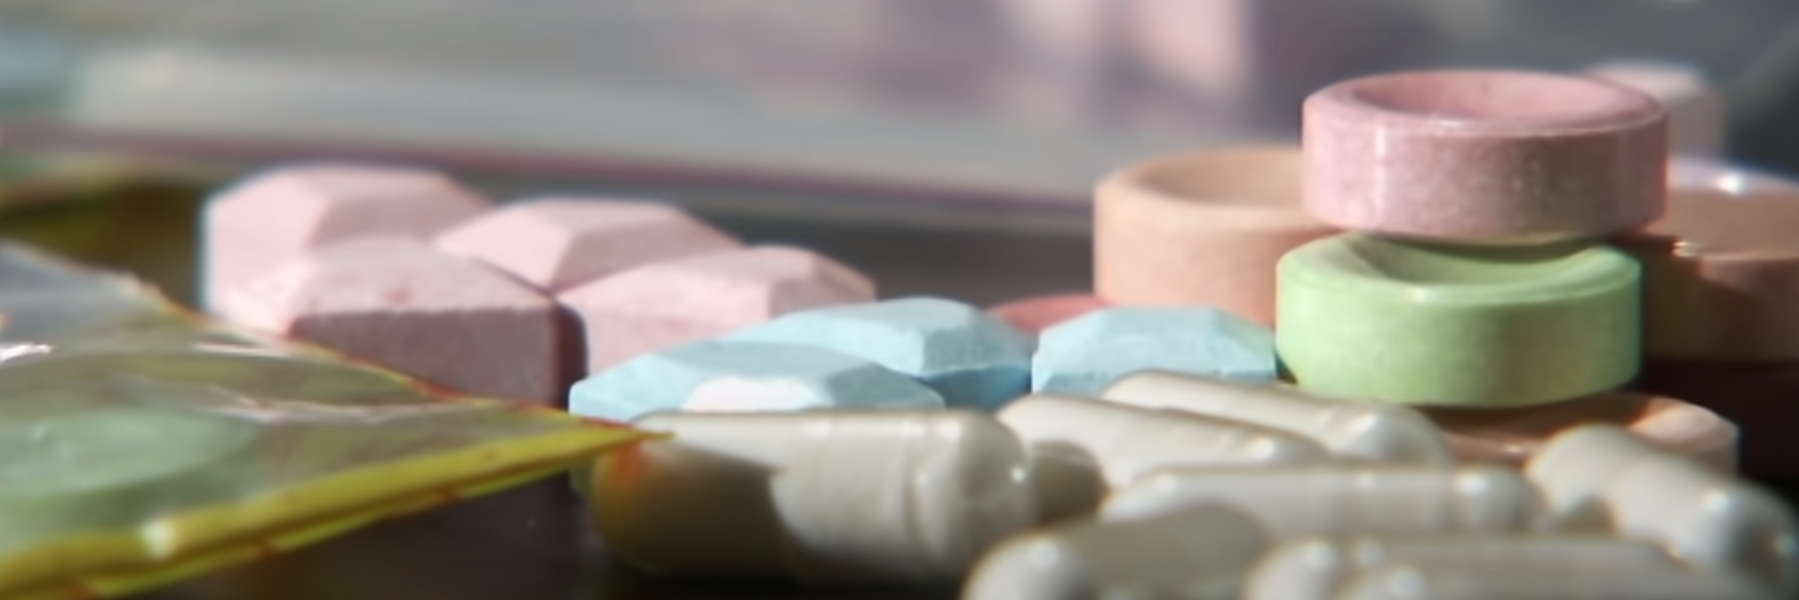 Разноцветные таблетки и капсулы рассыпаны по поверхности